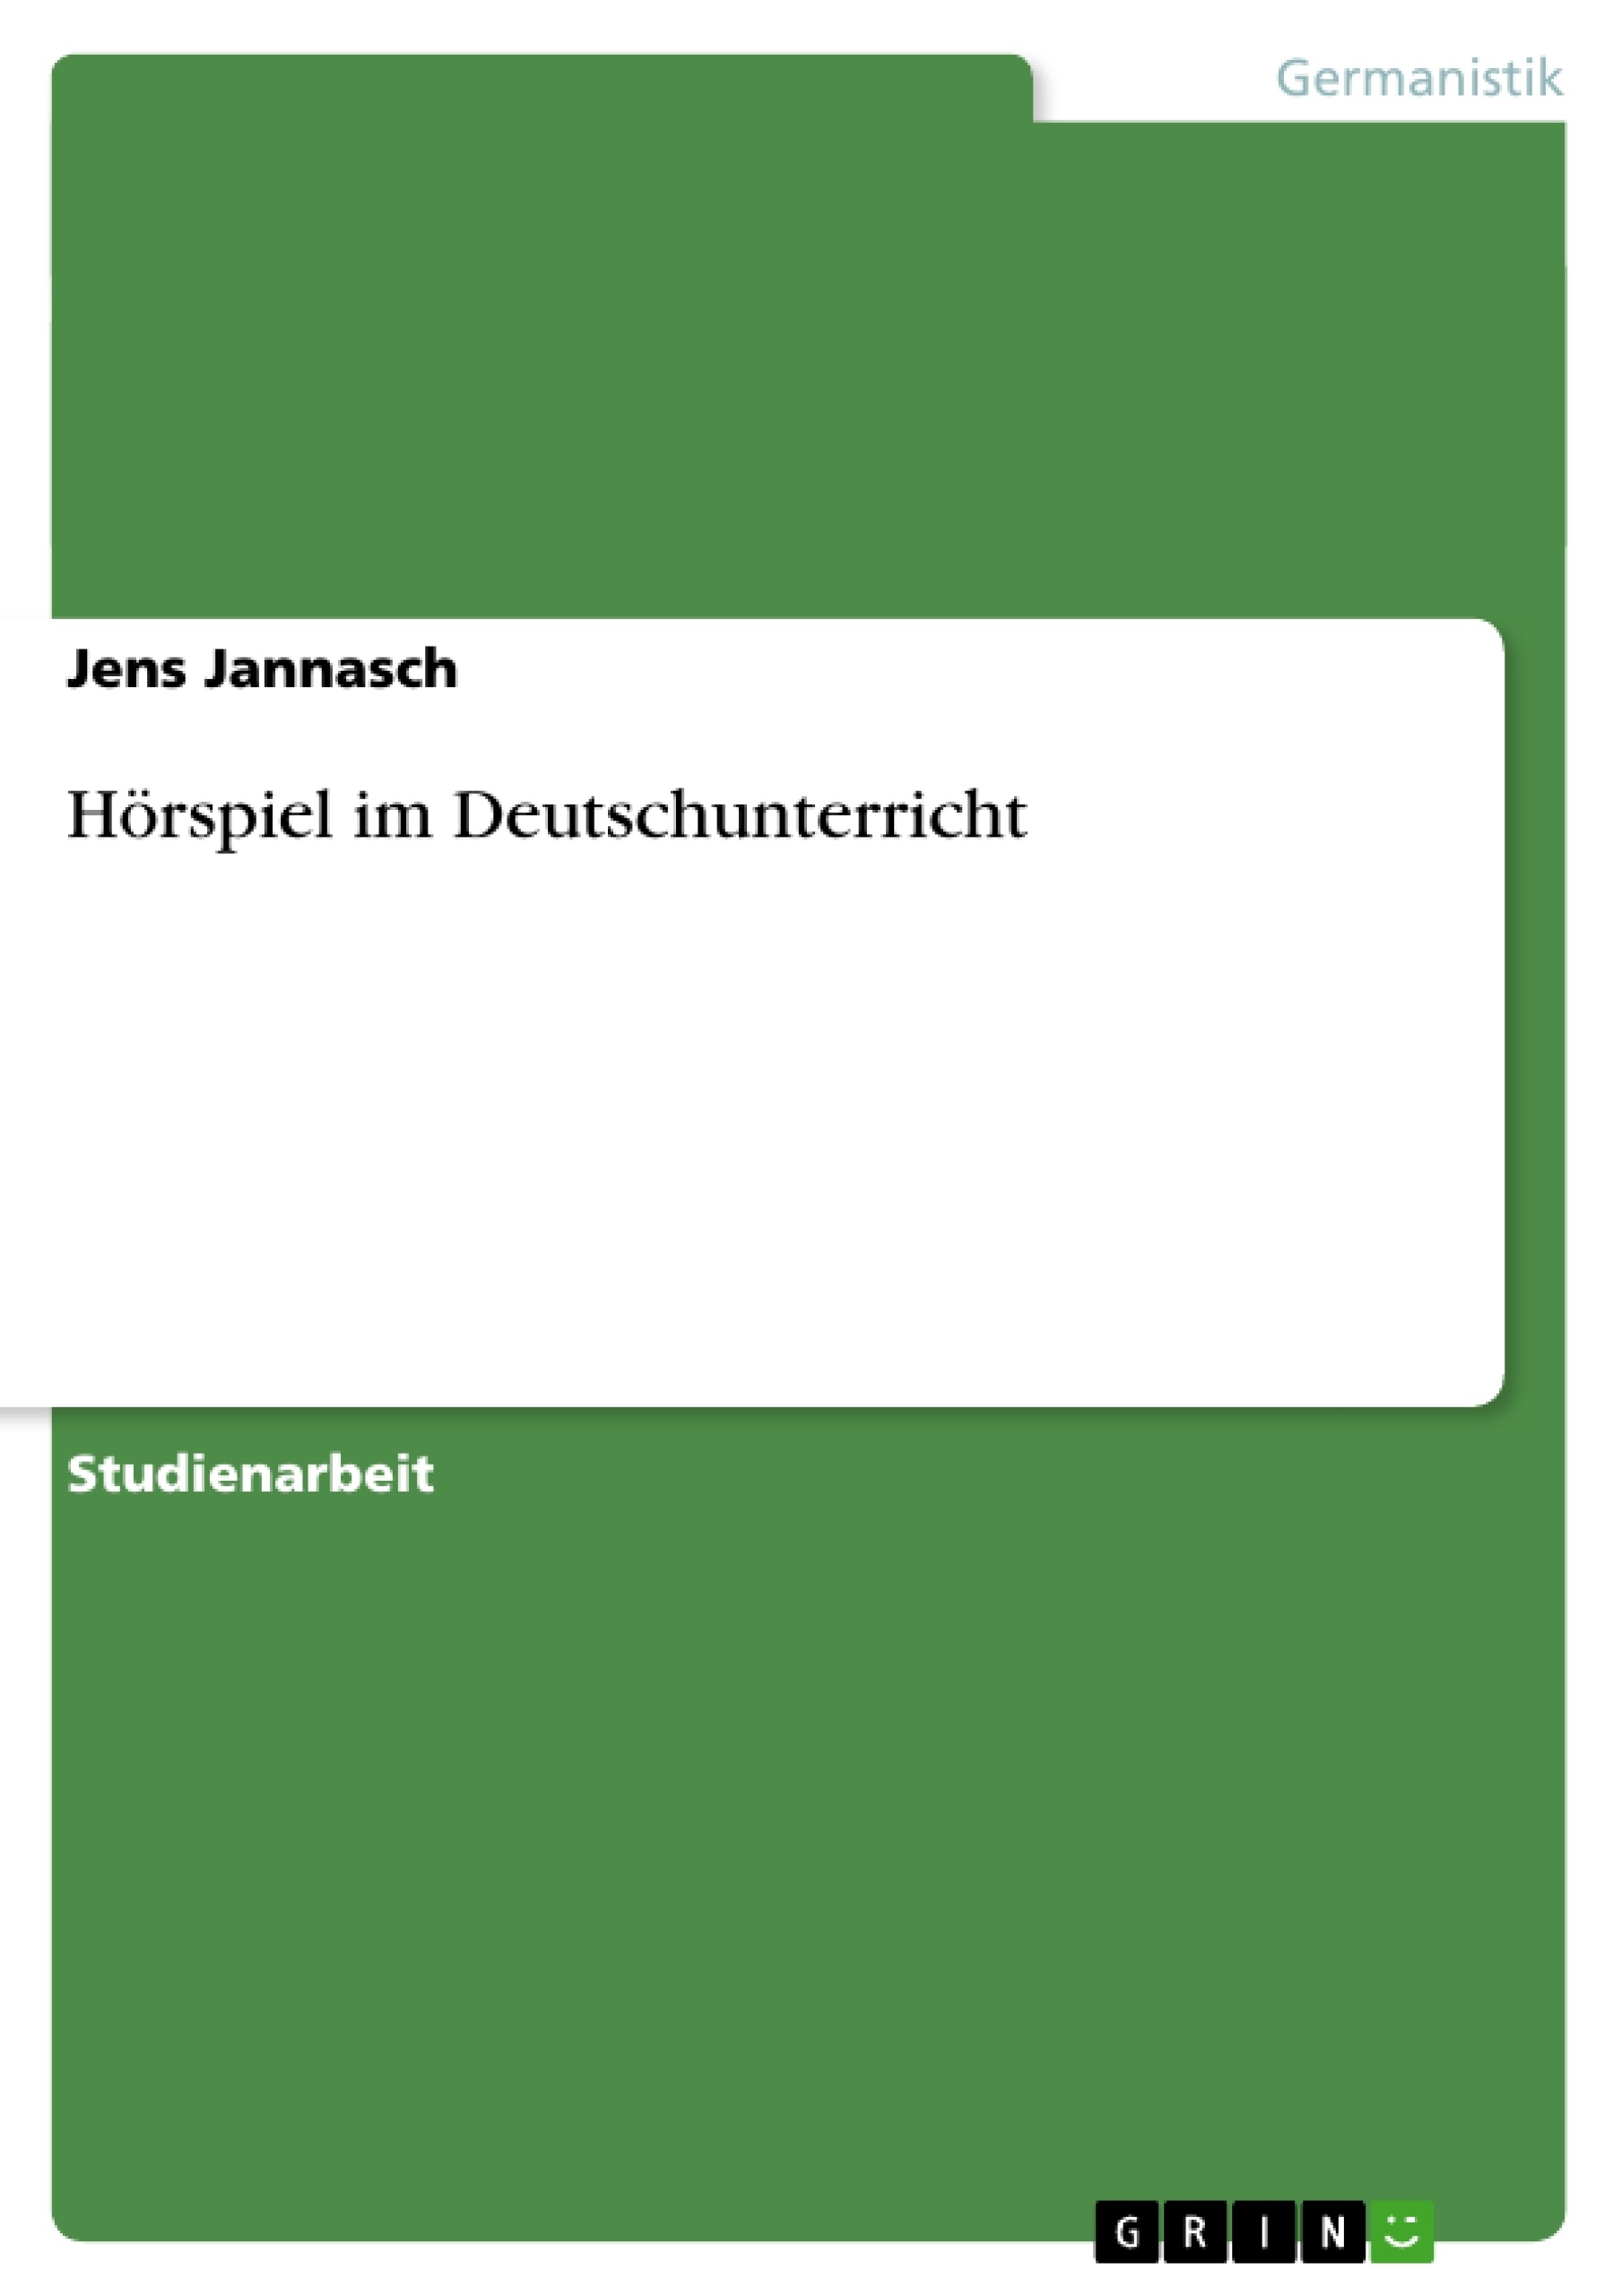 Titre: Hörspiel im Deutschunterricht